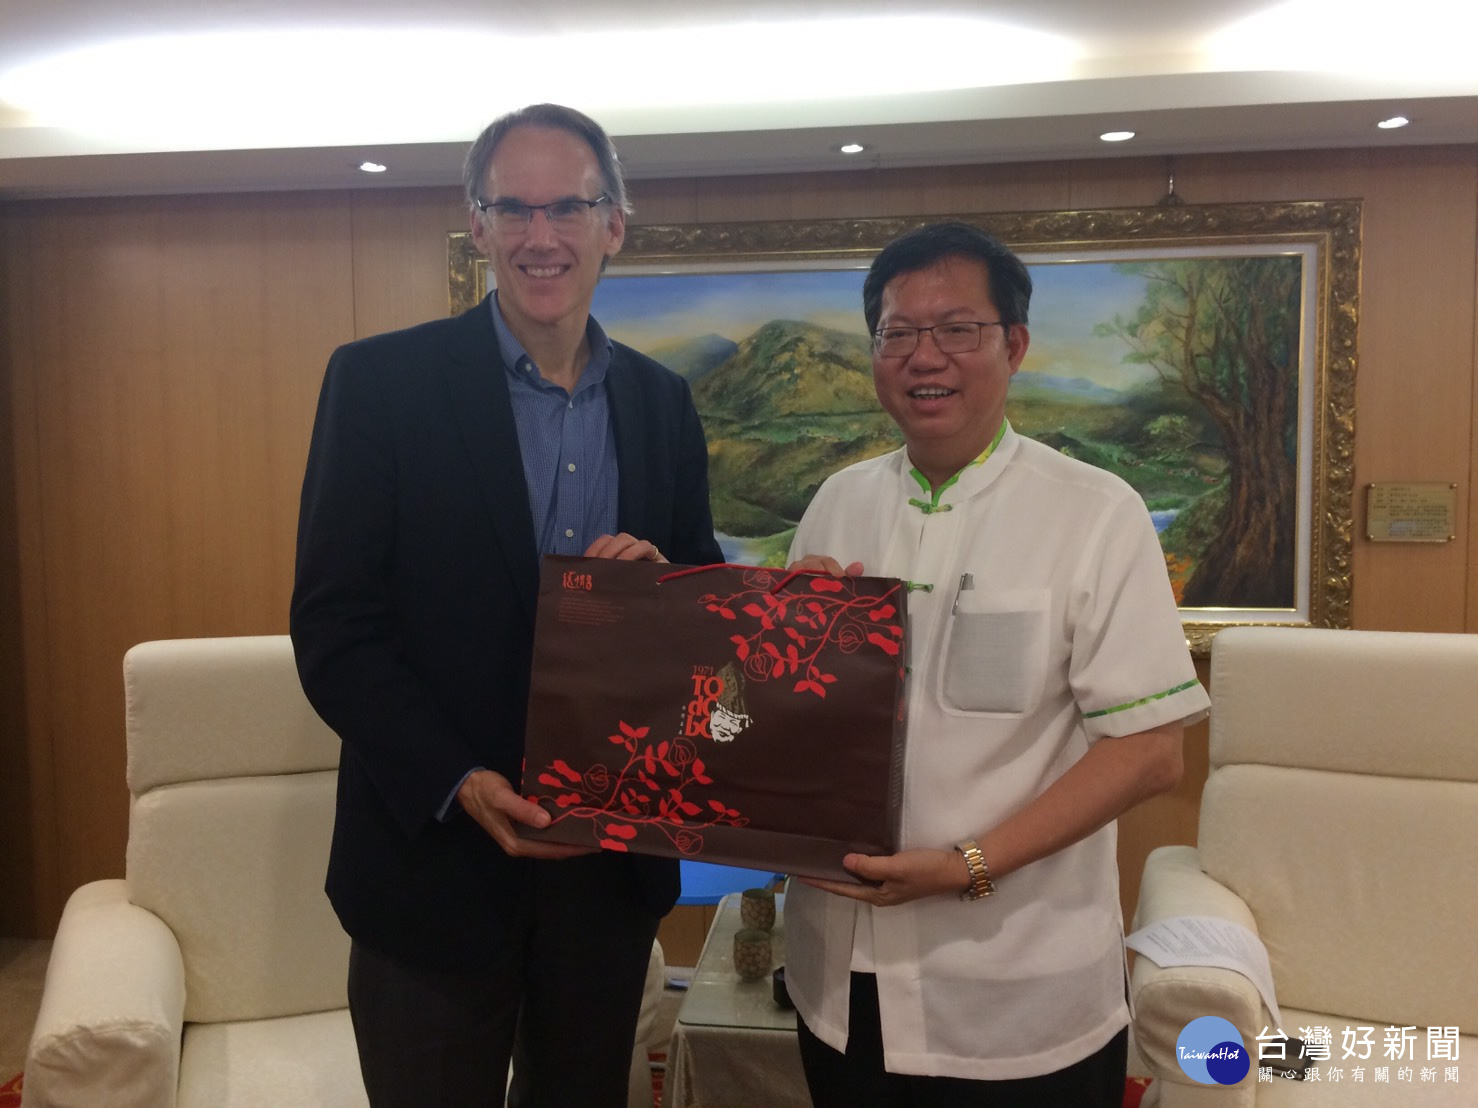 鄭文燦市長致贈台灣藍鵲瓷盤、土產花生糖予美國職棒大聯盟國際副總裁Jim Small。